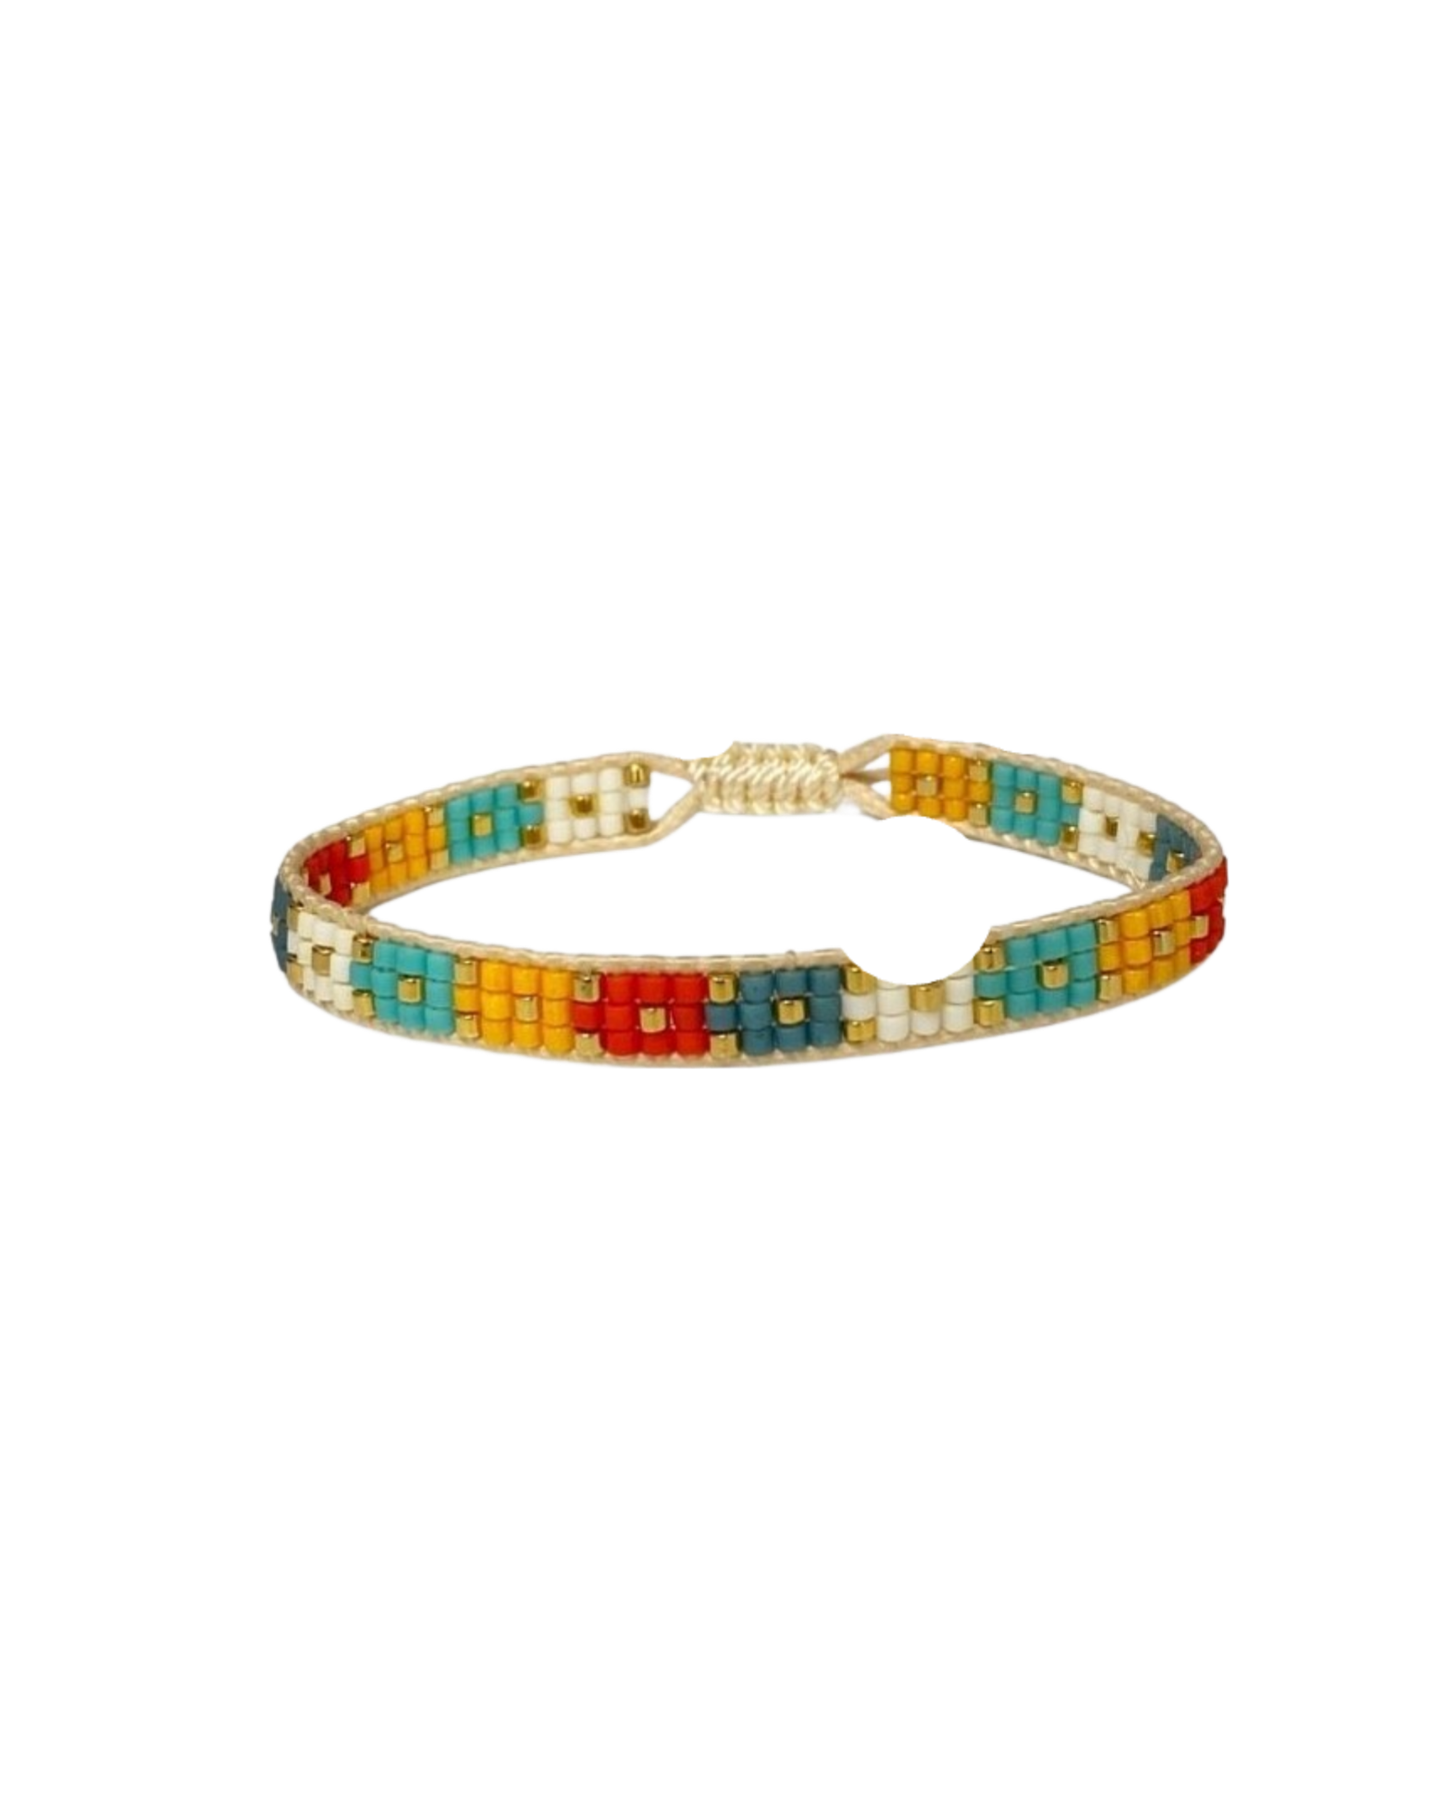 Colorful cute bracelets